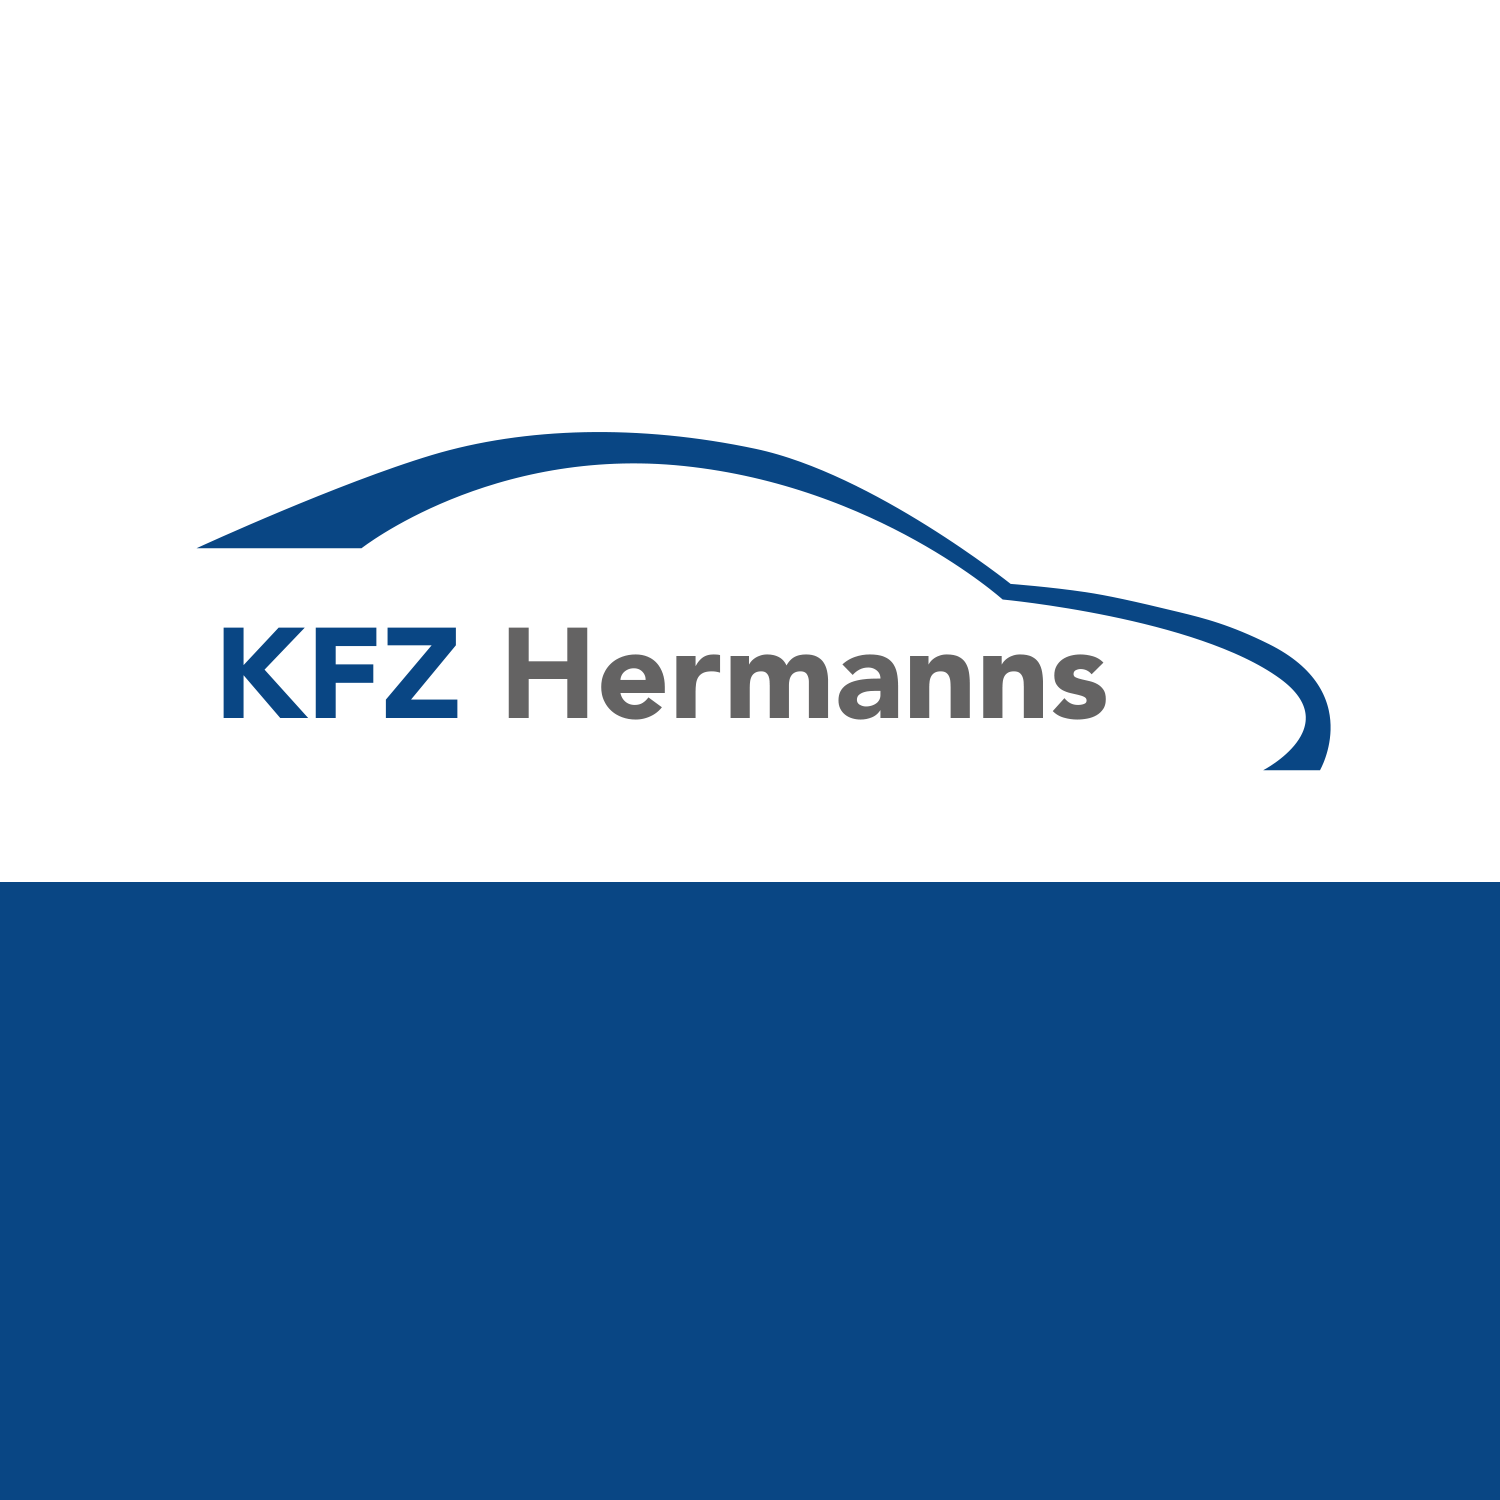 (c) Kfz-hermanns.de